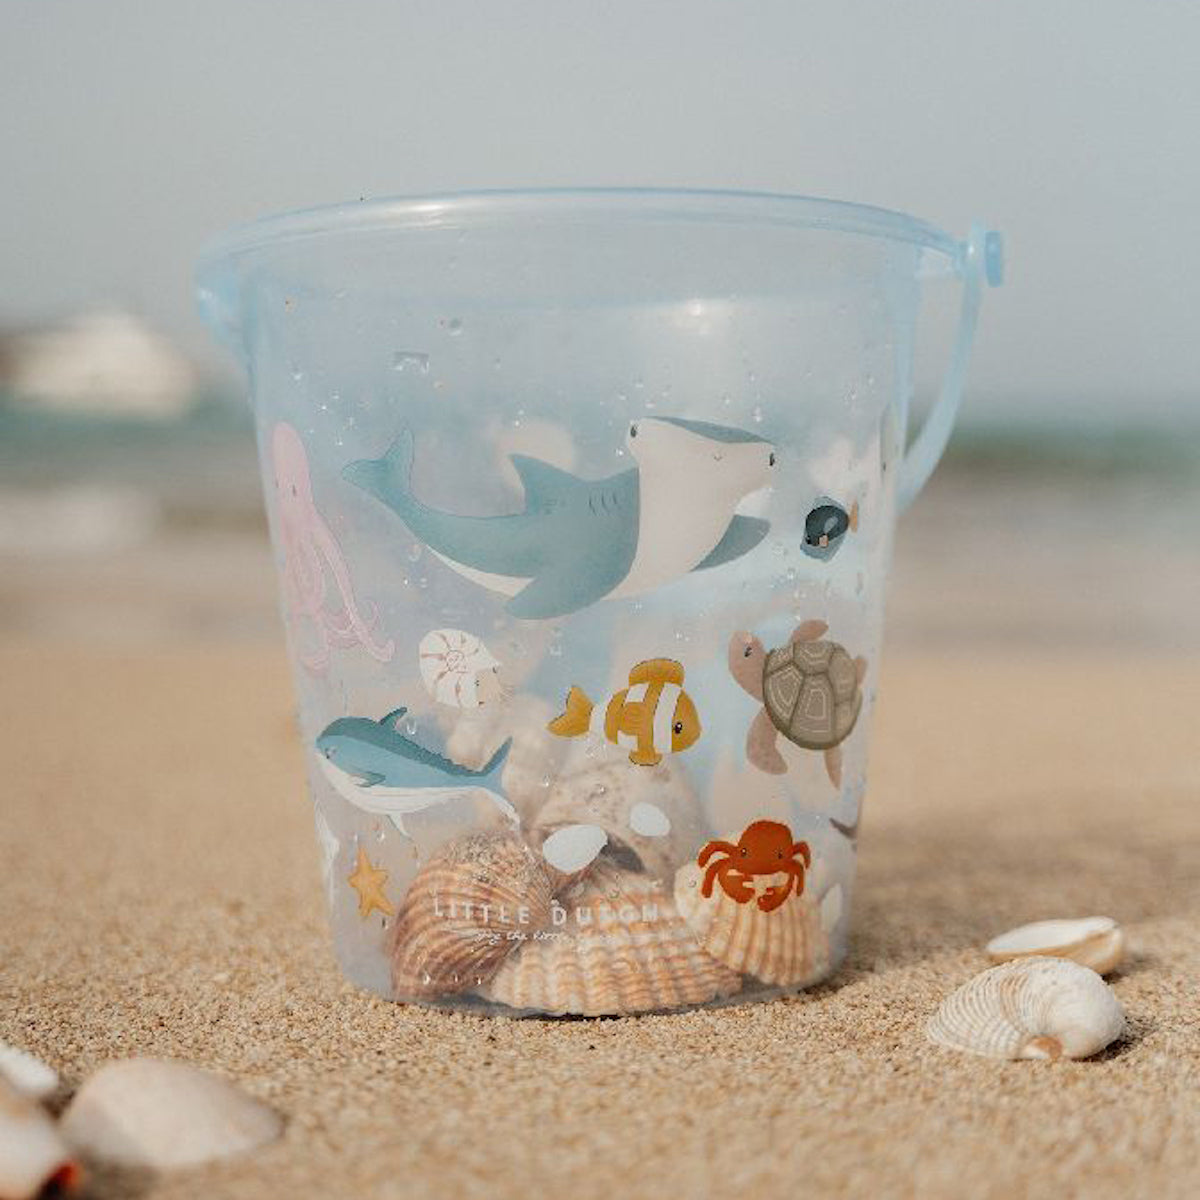 Maak een dagje strand nog leuker met dit blauwe transparante schelp emmertje van Little Dutch. De emmer is uitgevoerd met een super mooie waterdieren print. Door het transparante materiaal kan je alle vangsten goed bekijken. VanZus